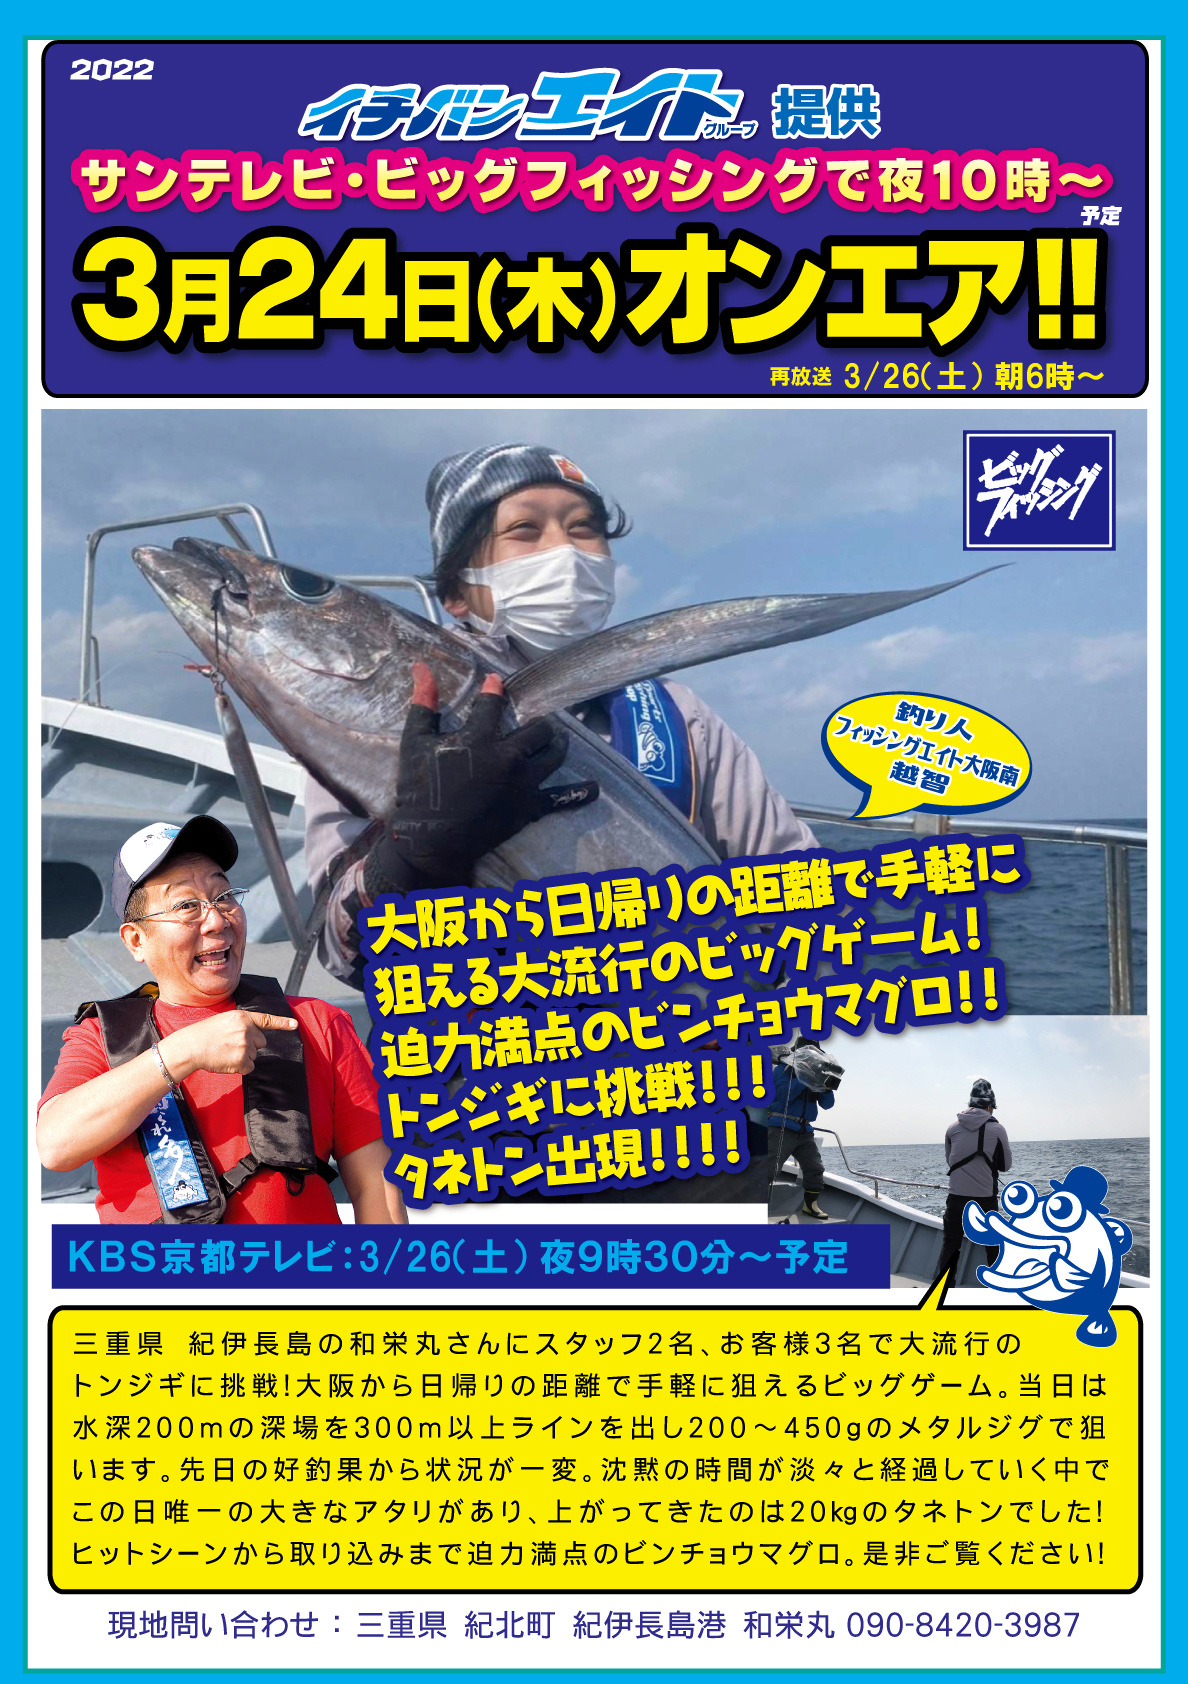 2022年3月24日（木） サンテレビビッグフィッシング【トンジギに挑戦!!】オンエア